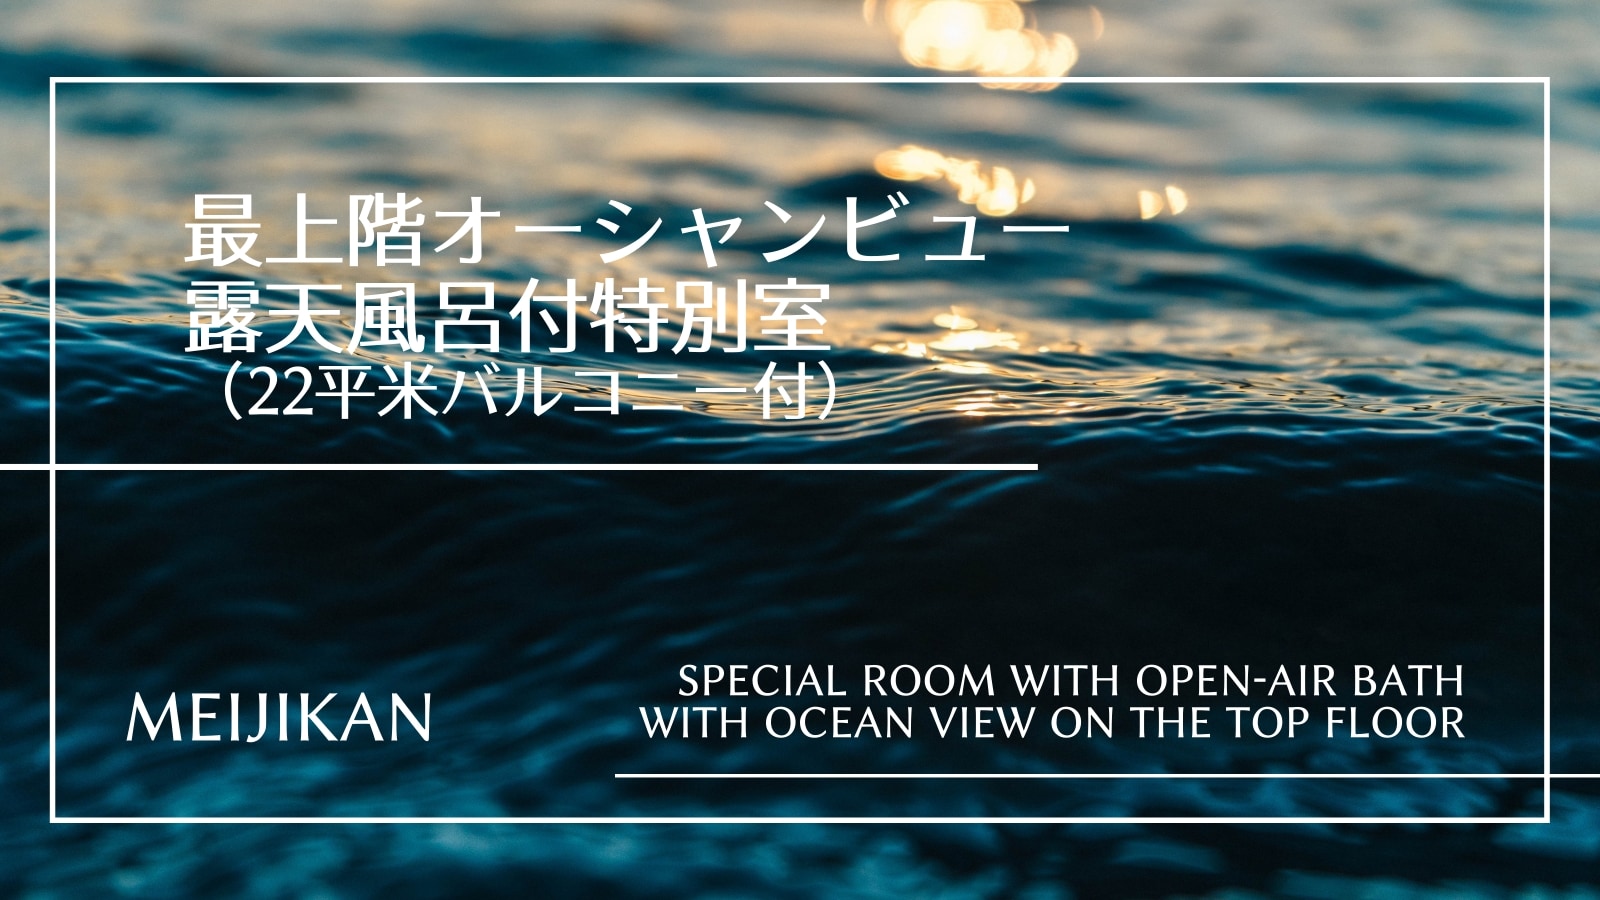 Top floor (7th floor) Special room with ocean view open-air bath